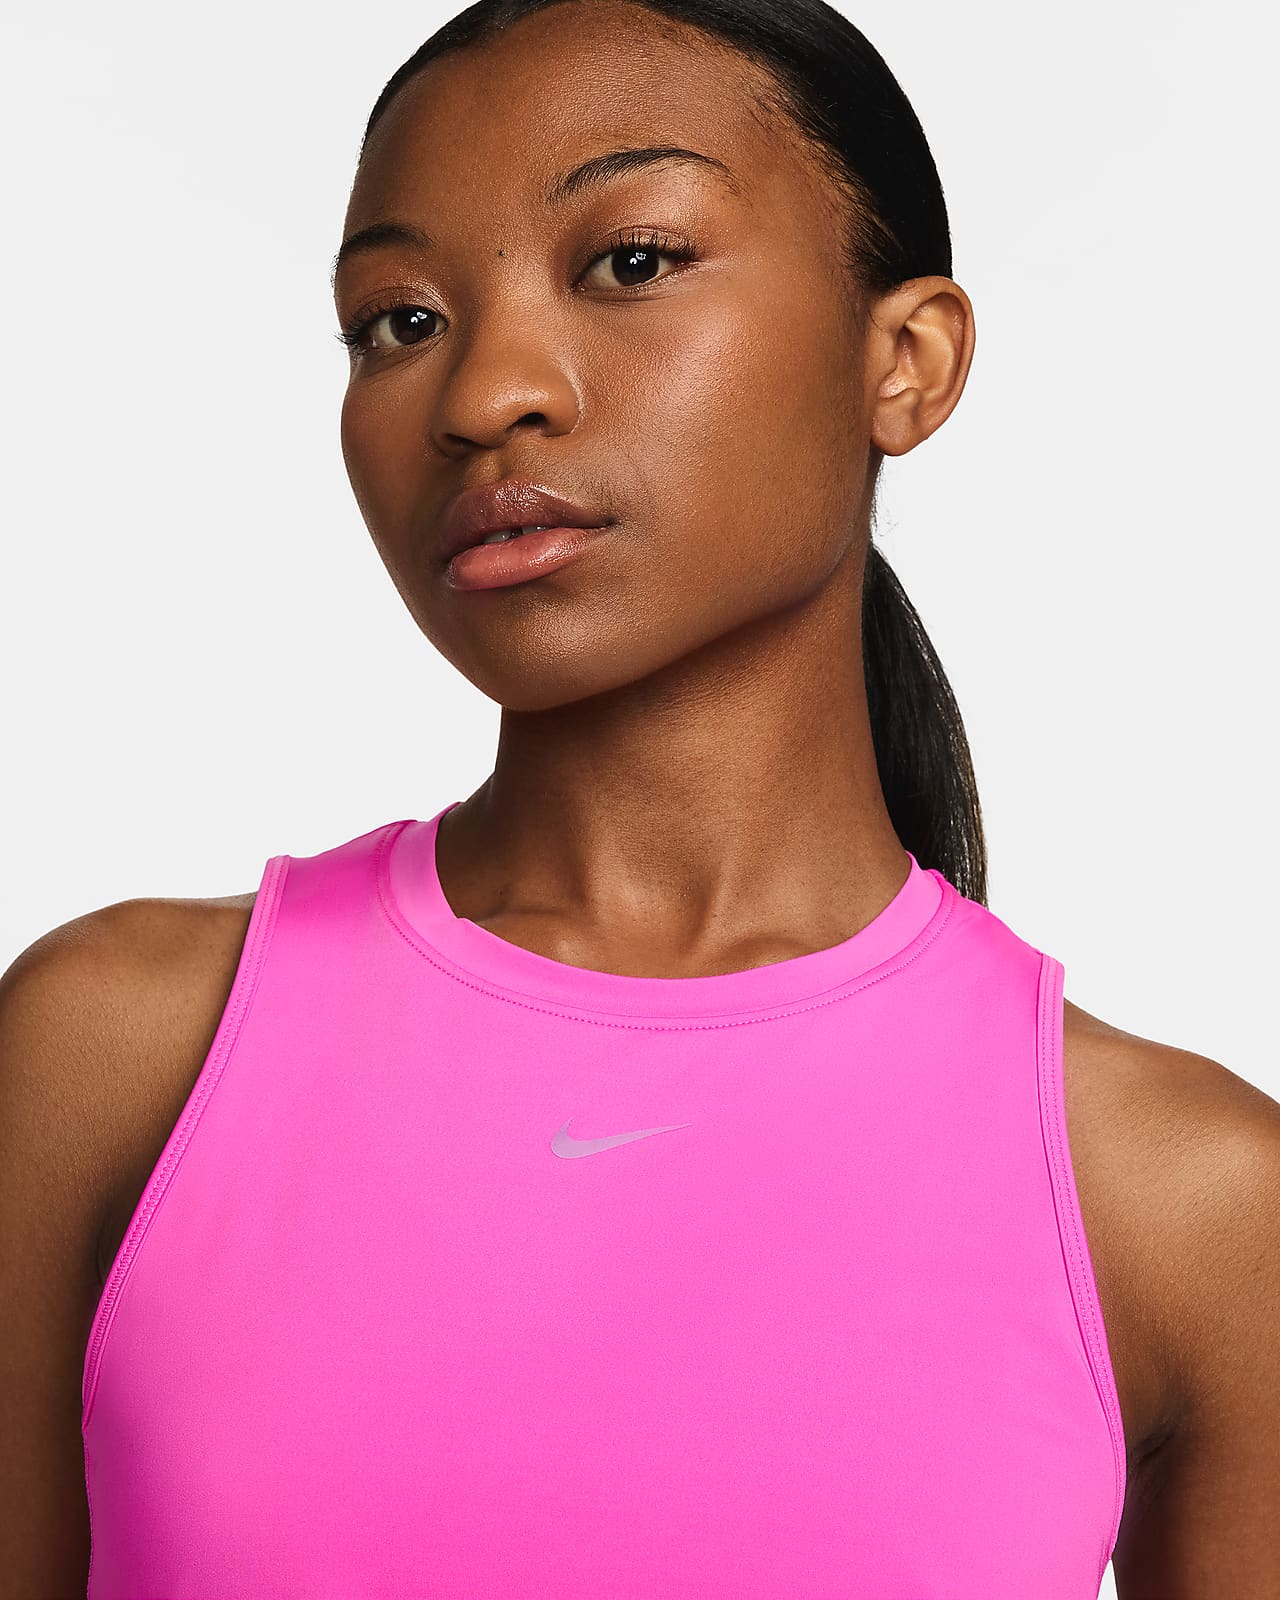 Nike Tank Top Lean Black Women